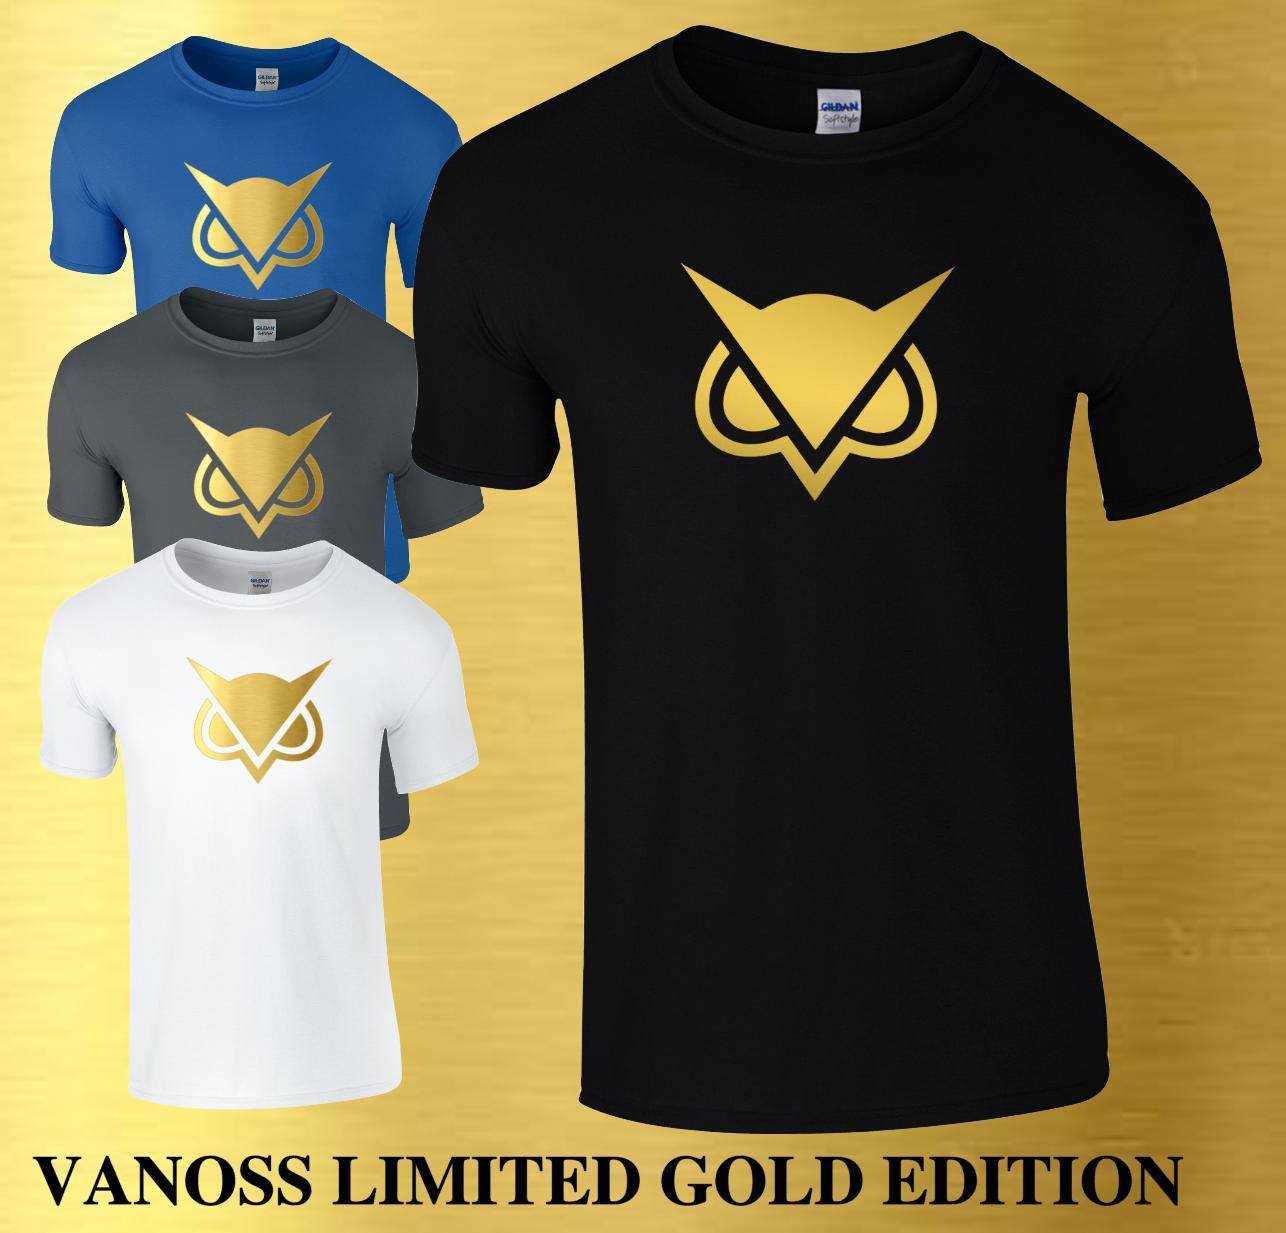 Cool VG Logo - Vanoss Youtuber T Shirt Cool VG Gaming Inspired YouTube Kids & Mens ...